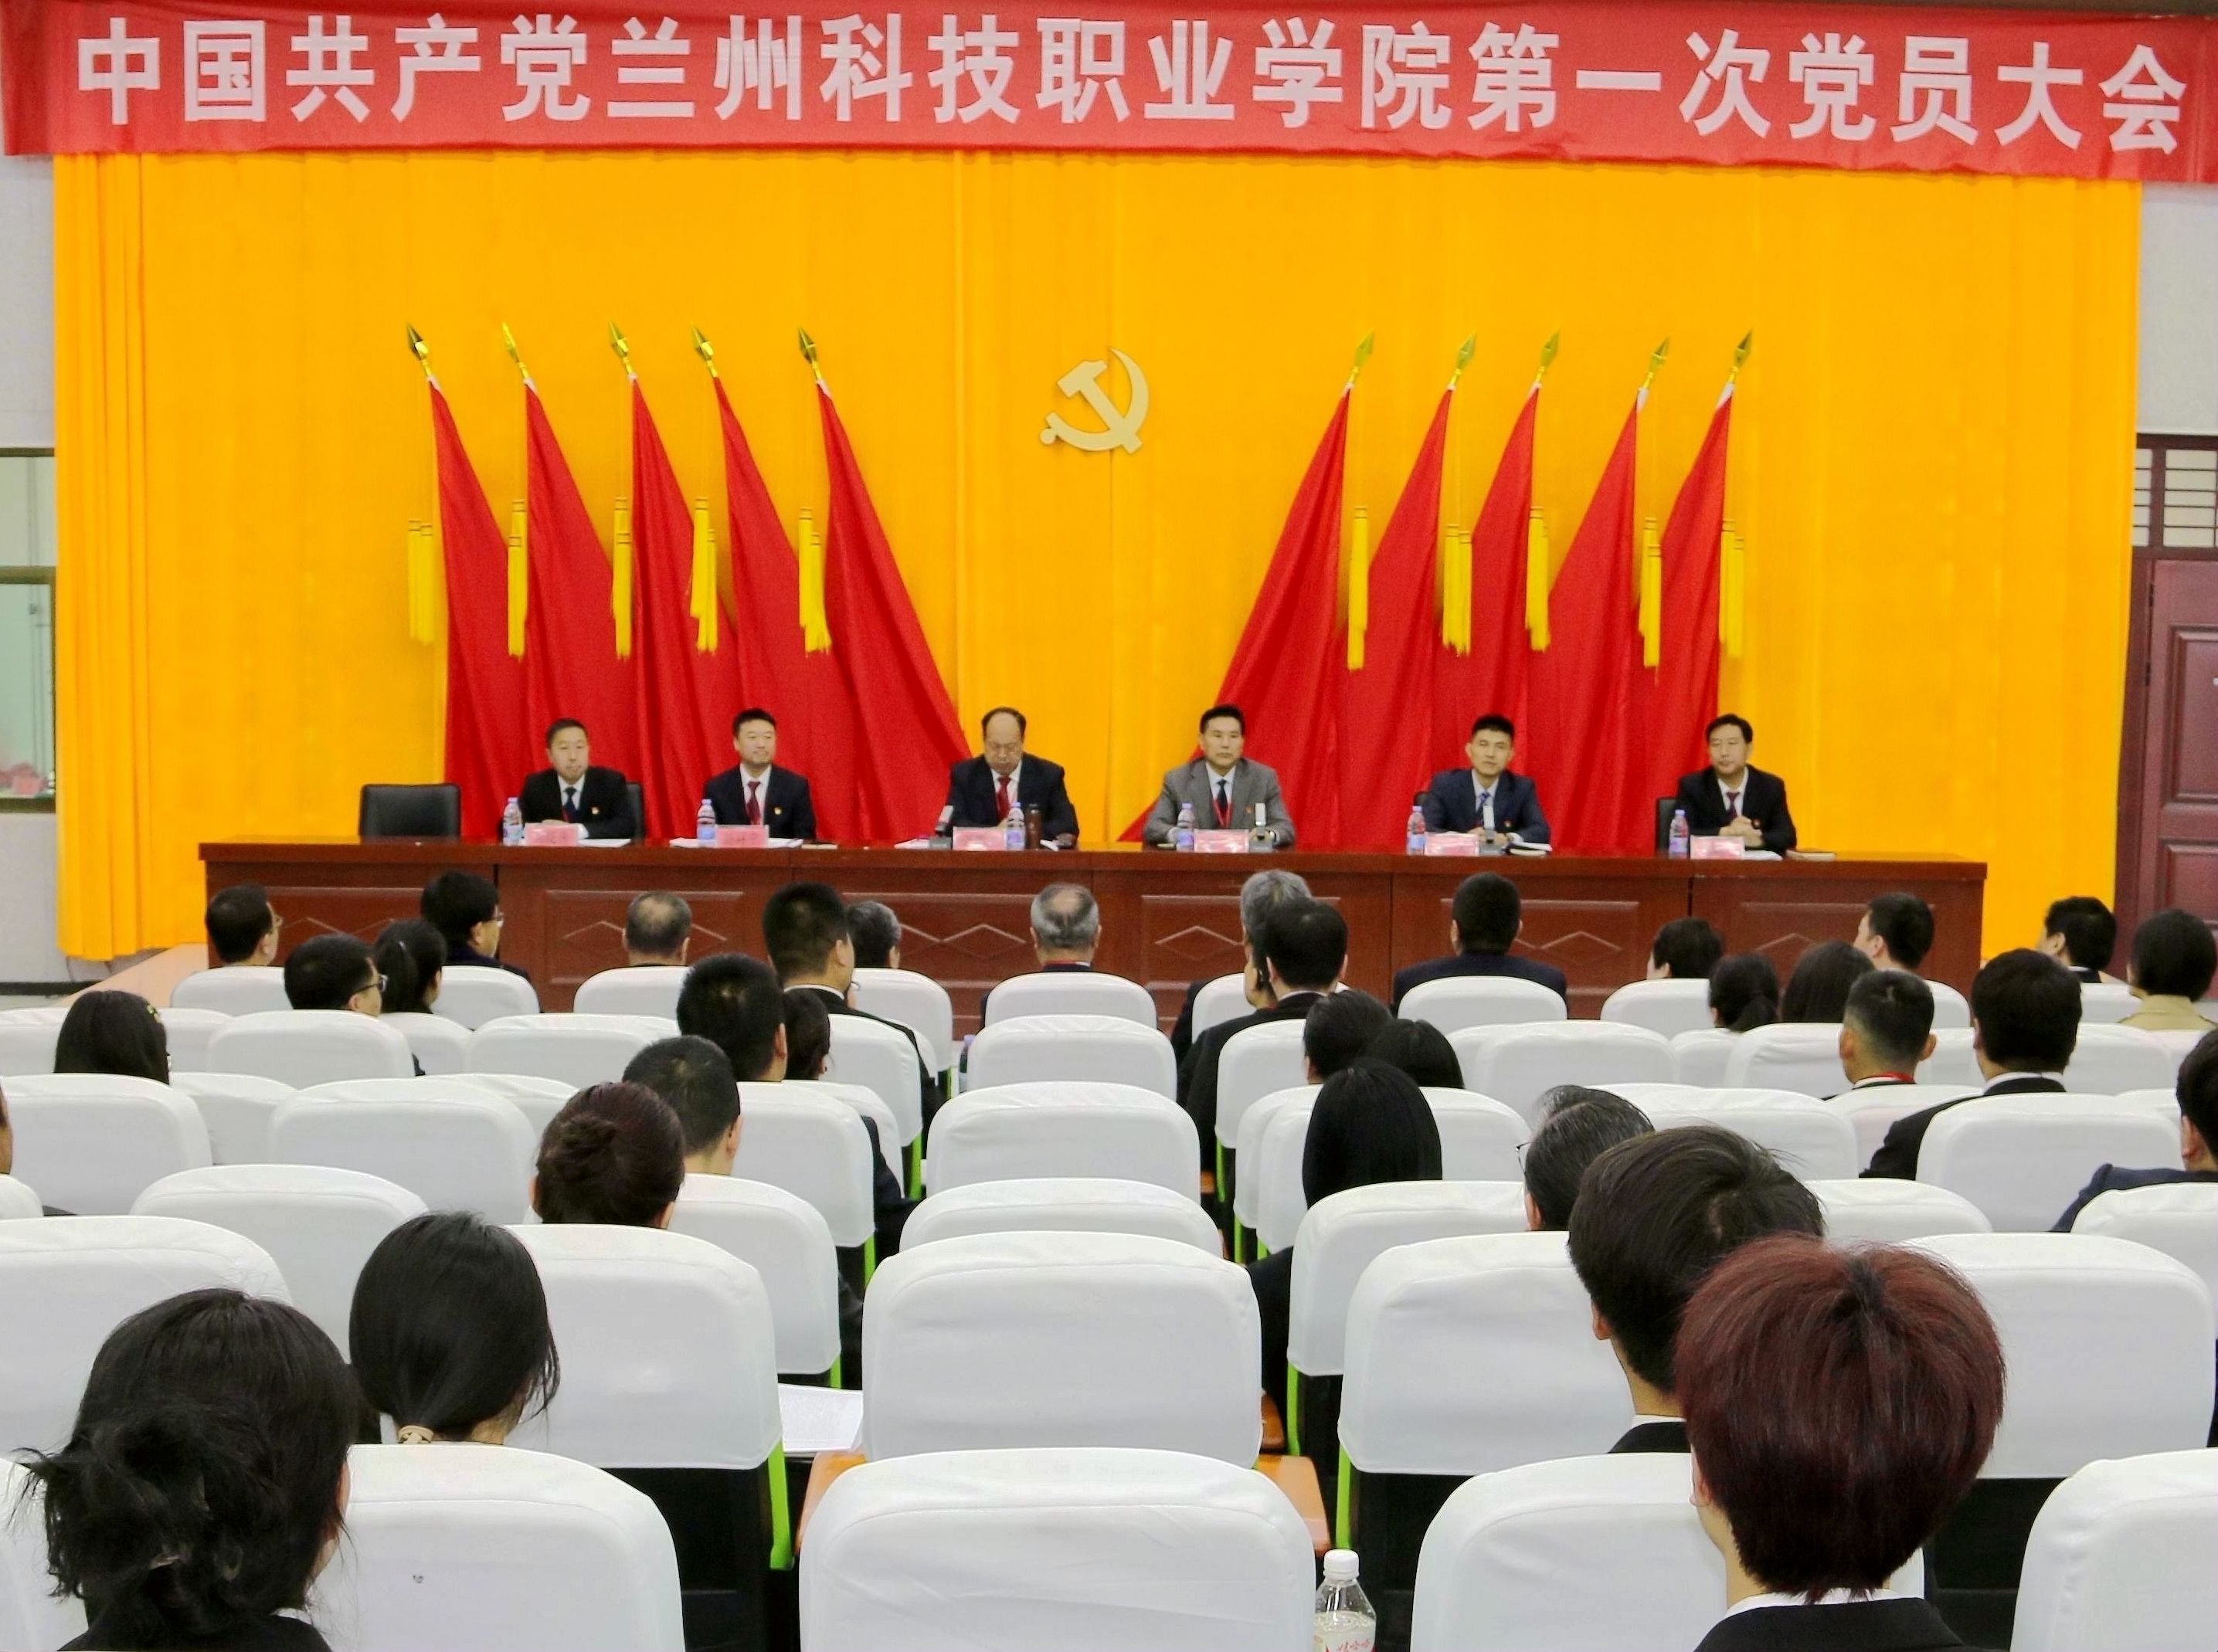 中国共产党bet356体育亚洲版在线官网第一次党员大会隆重开幕